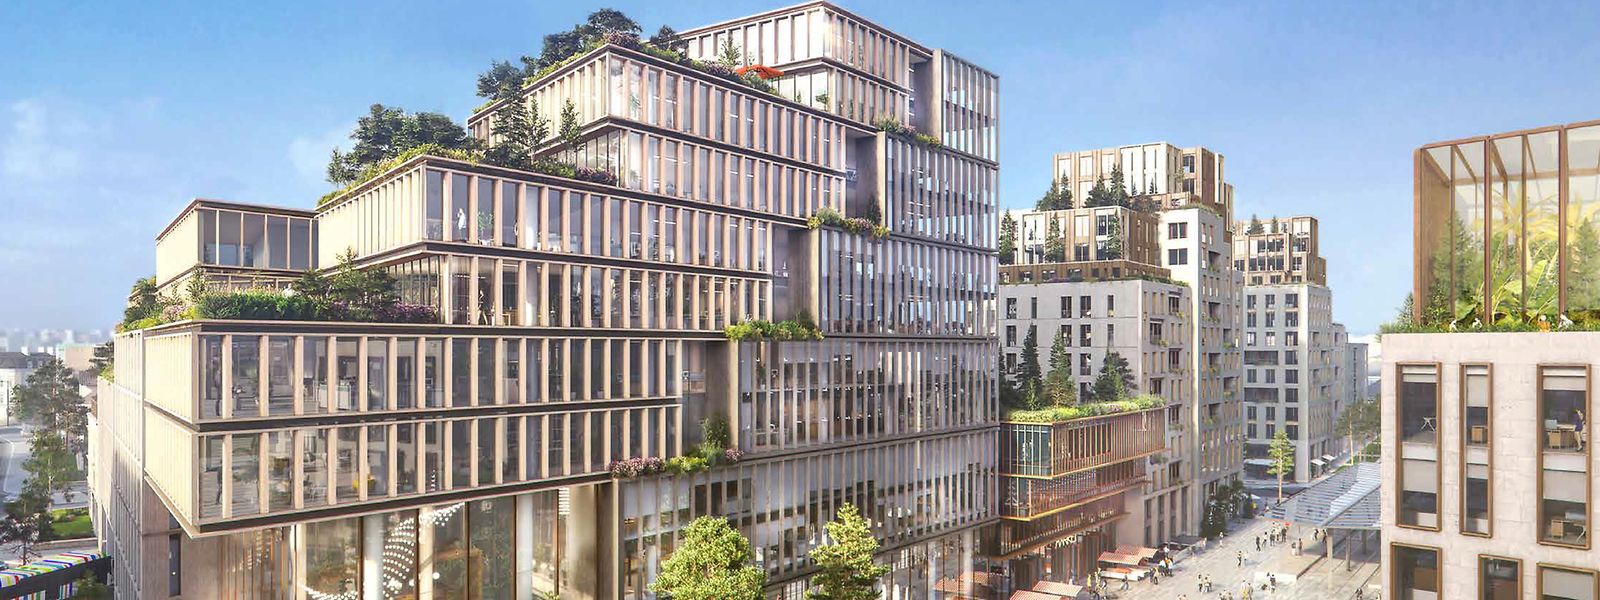 Die Entwürfe von der neuen Place de l'Etoile zeichnen ein lebendiges, farbenfrohes Bild von einem Ort, der sein Potenzial erst noch entfalten dürfte.